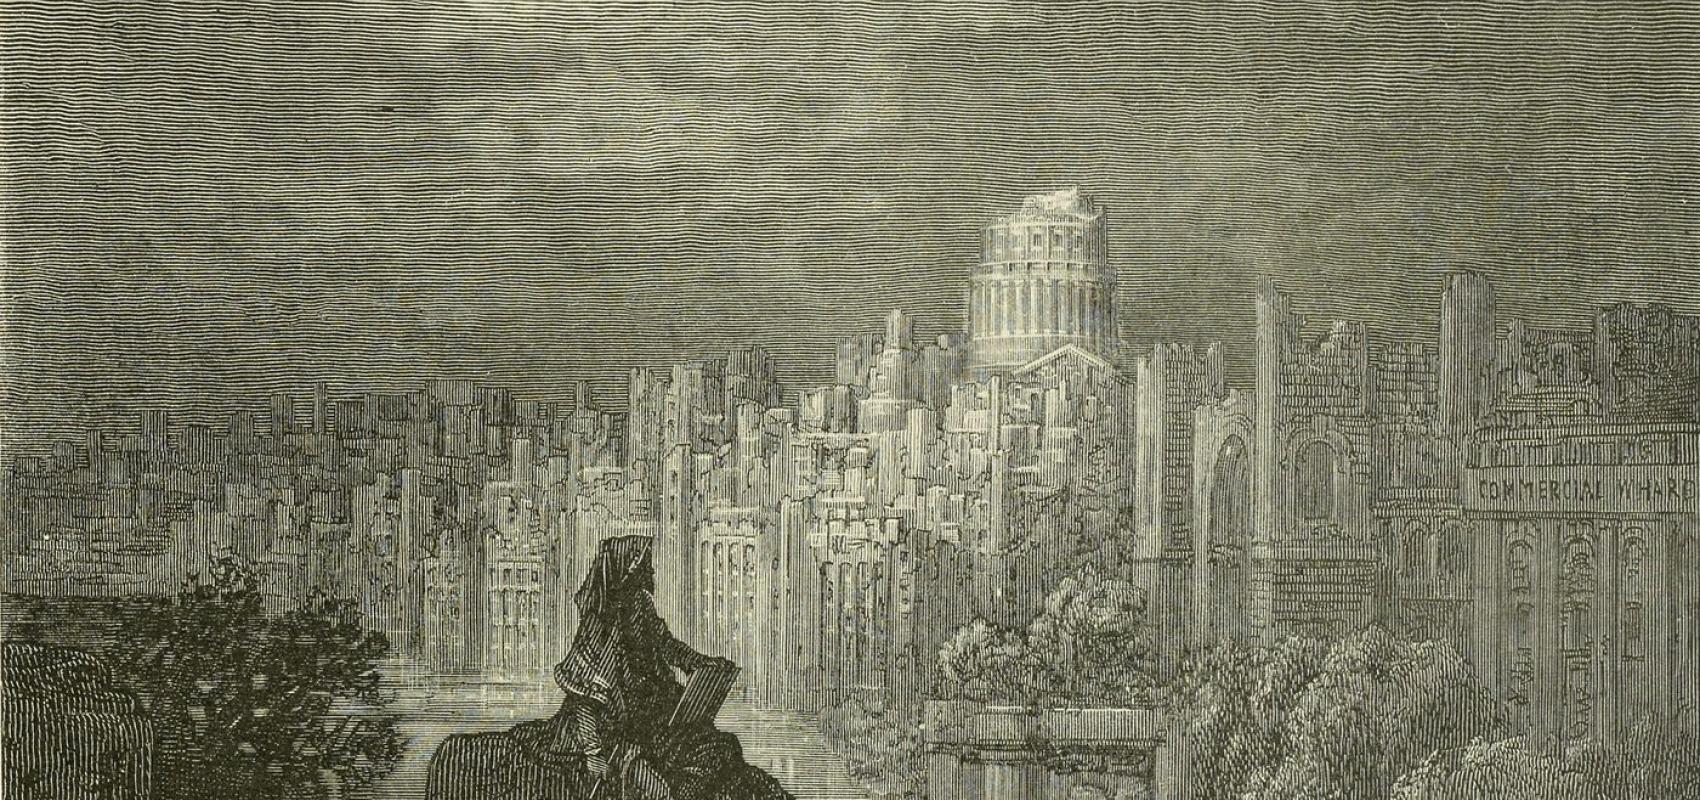 Illustration de Gustave Doré pour l'ouvrage « Londres » de Louis Enault - 1876 - BnF, département Philosophie, histoire, sciences de l'homme